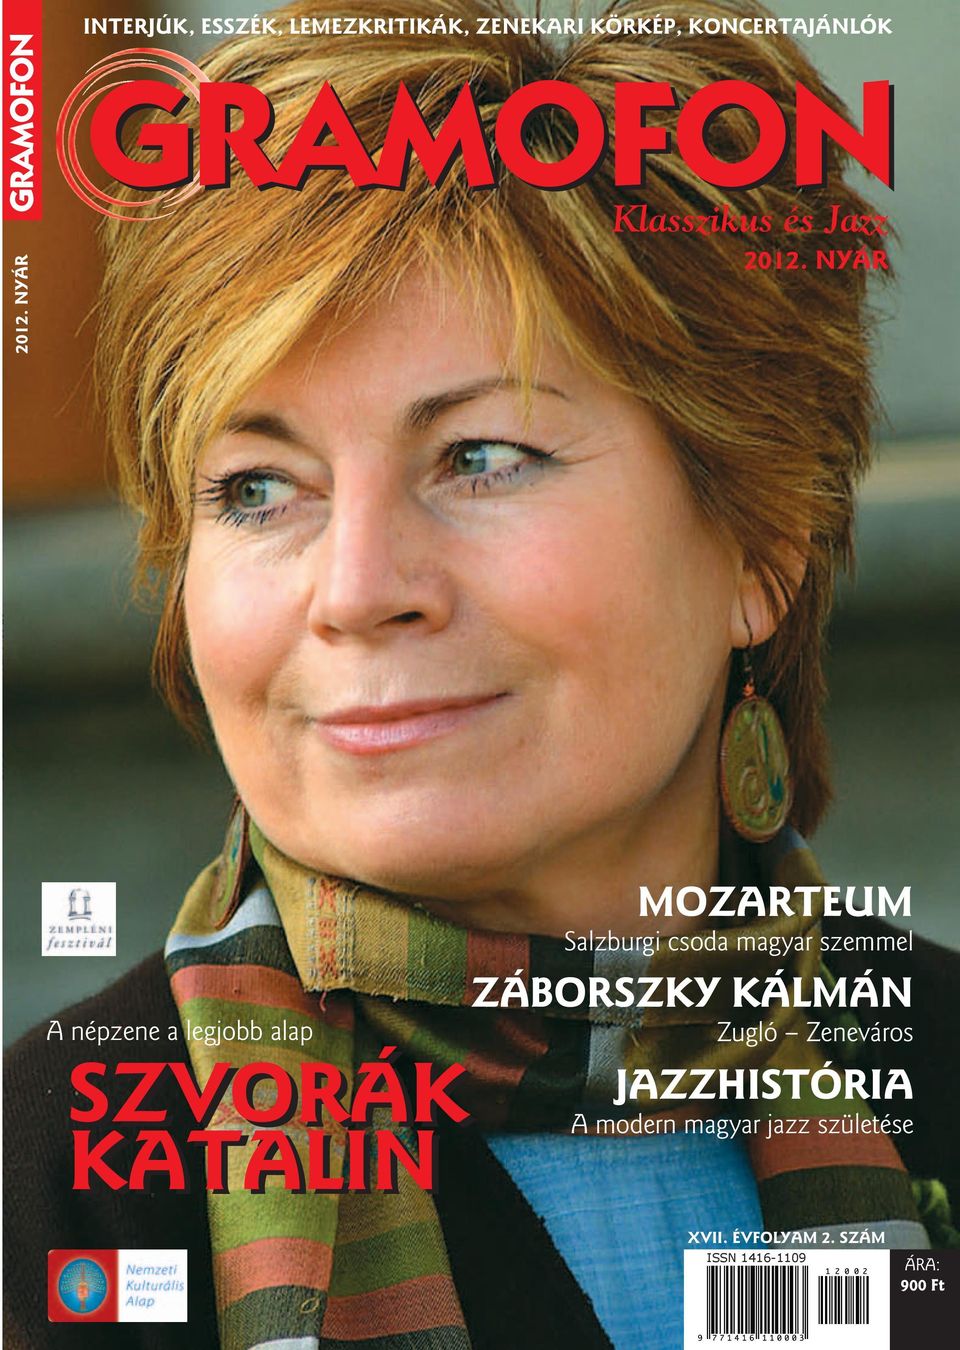 NYÁR Klasszikus és Jazz 2012.